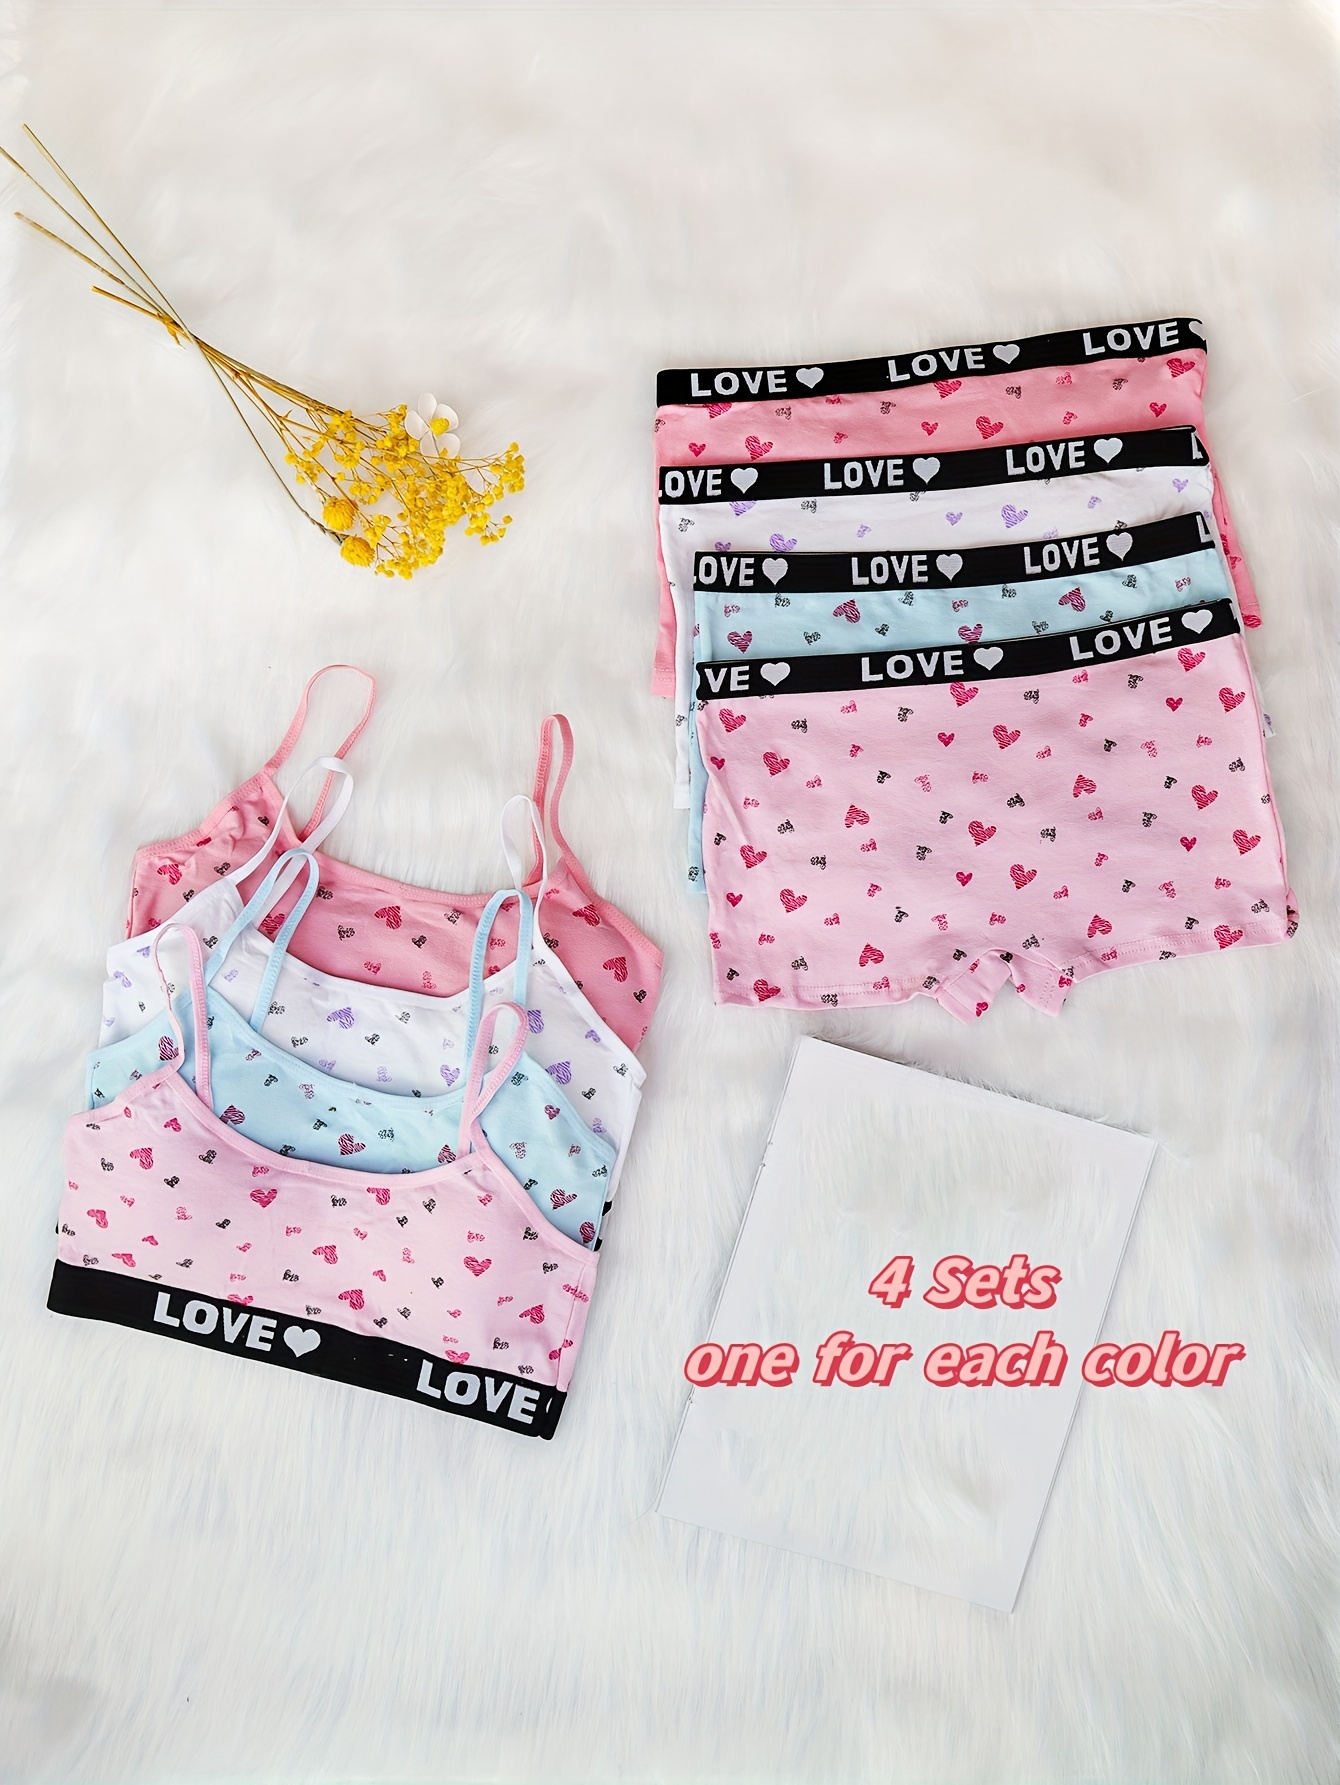 Girls Vest Children's Suspenders Girls' Underwear Puberty - Temu